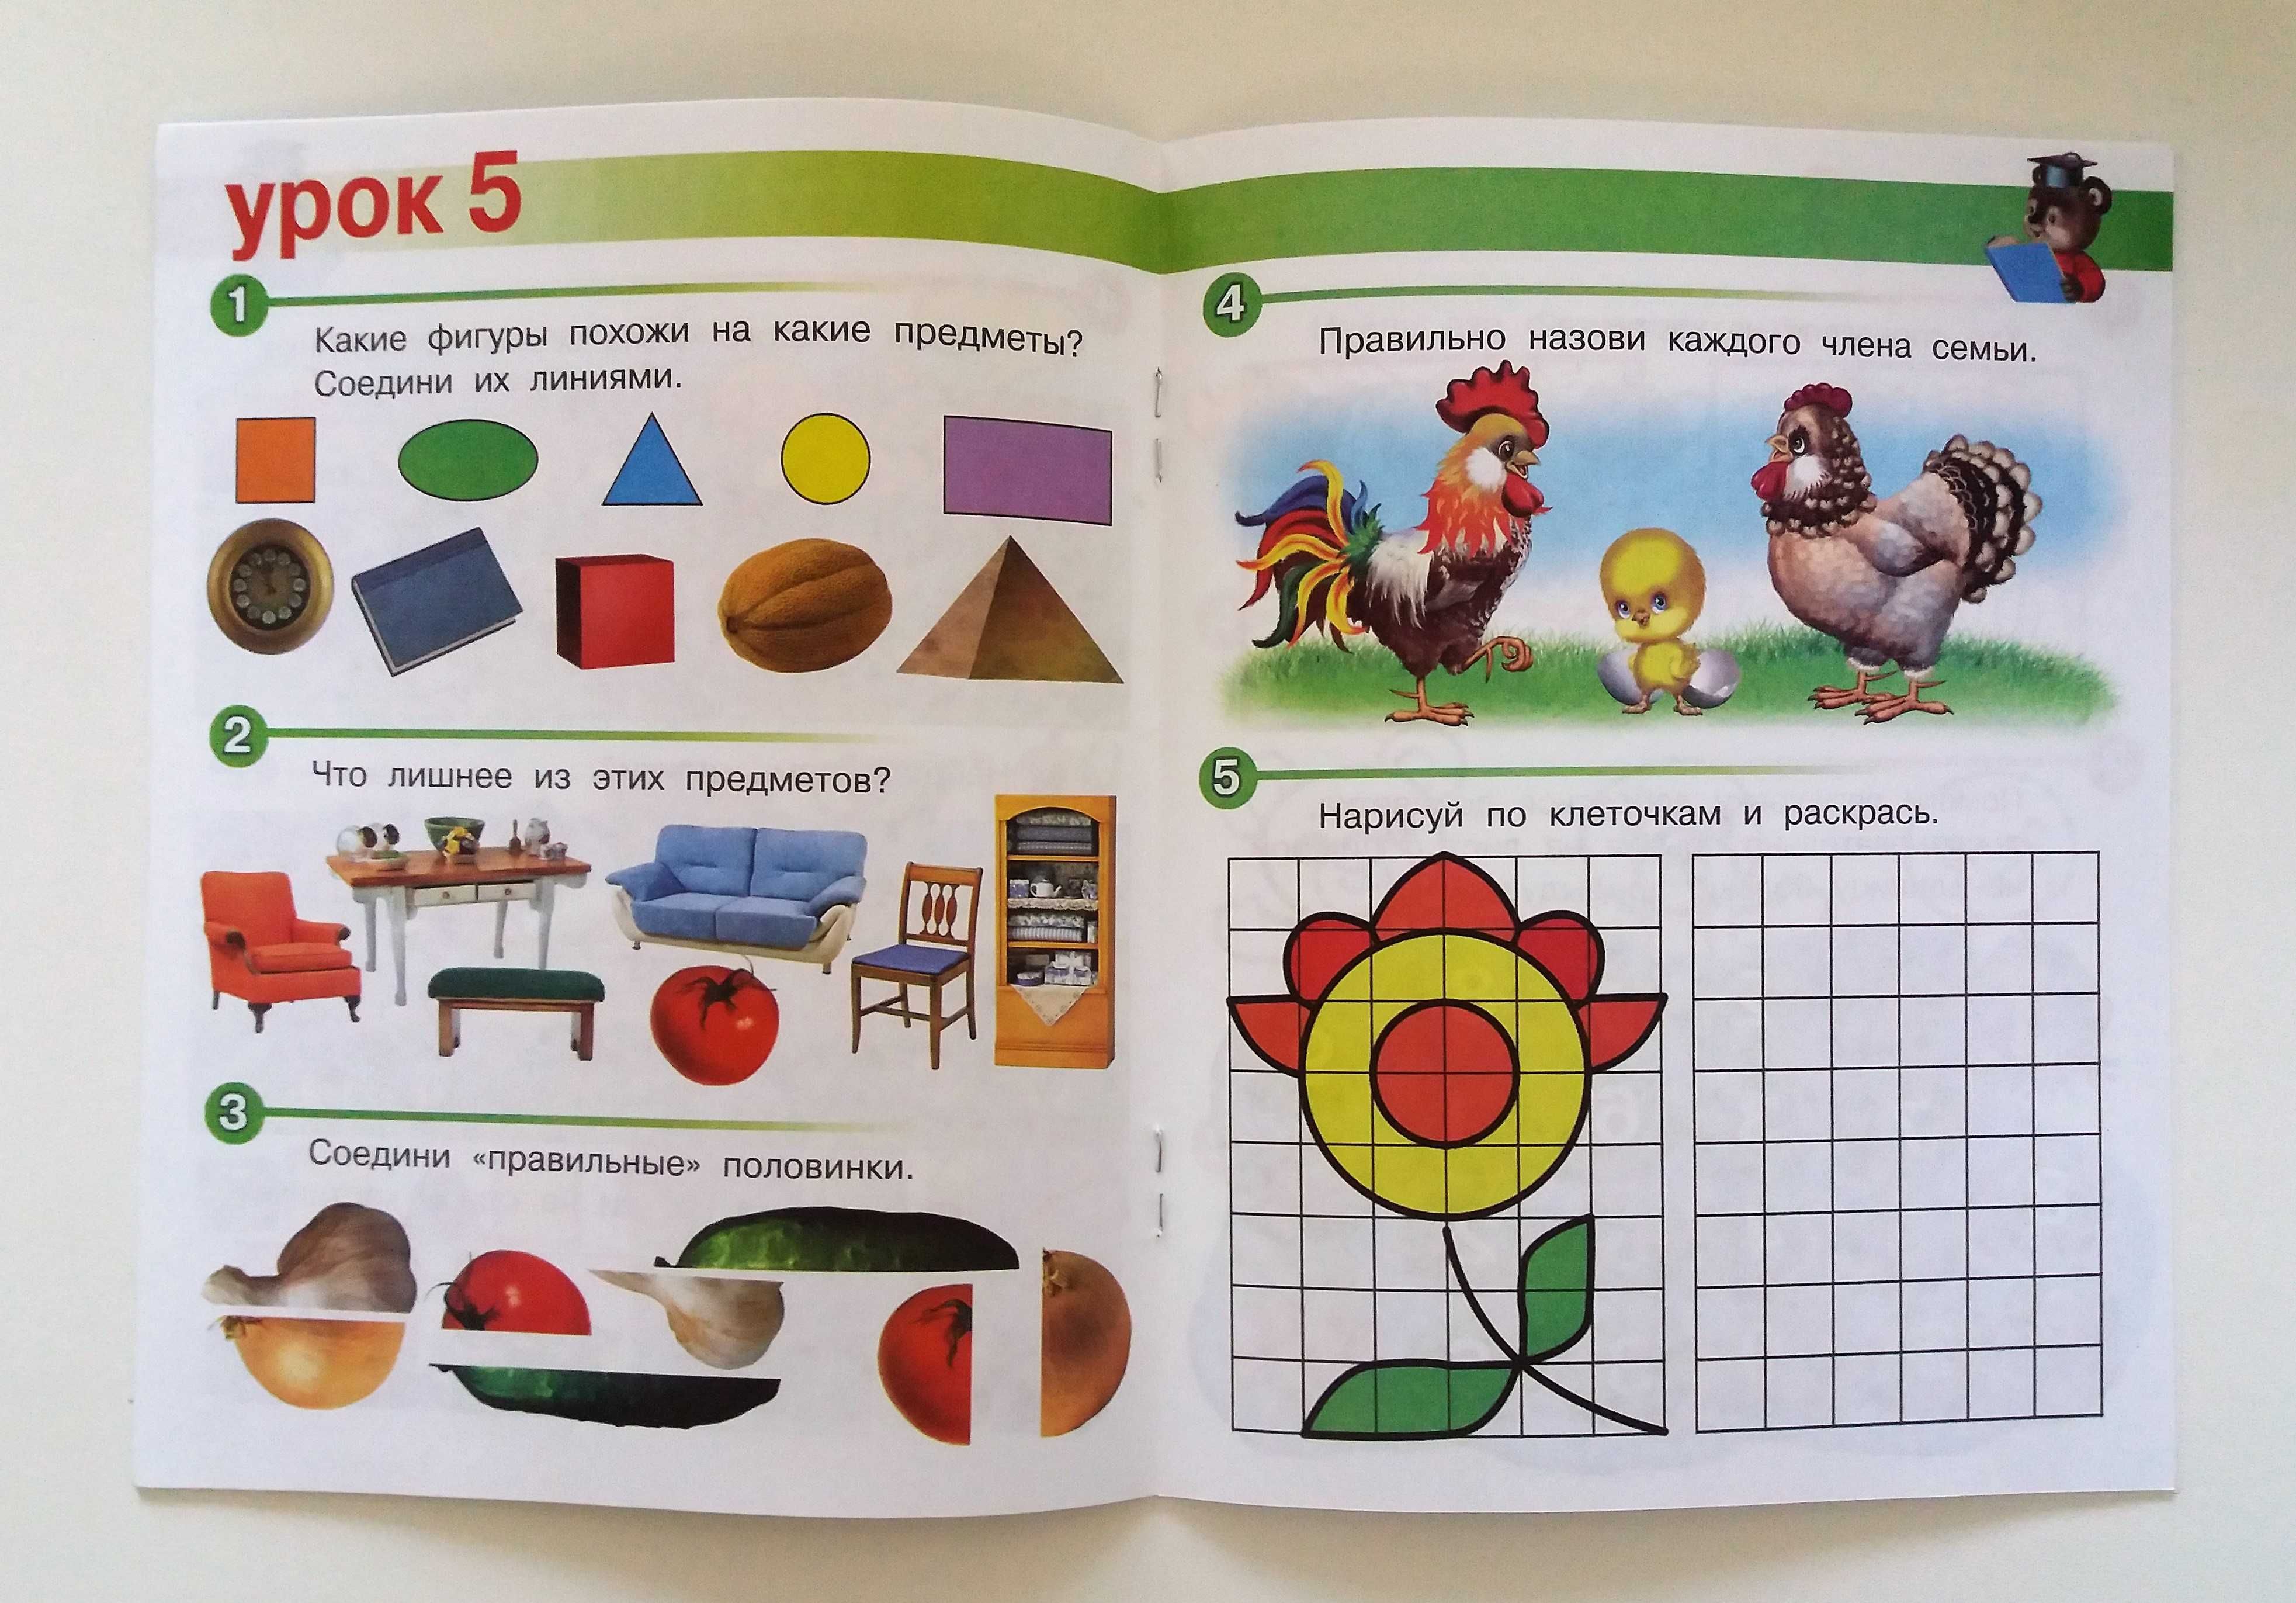 Комплект обучающих книжек-тетрадей для детей